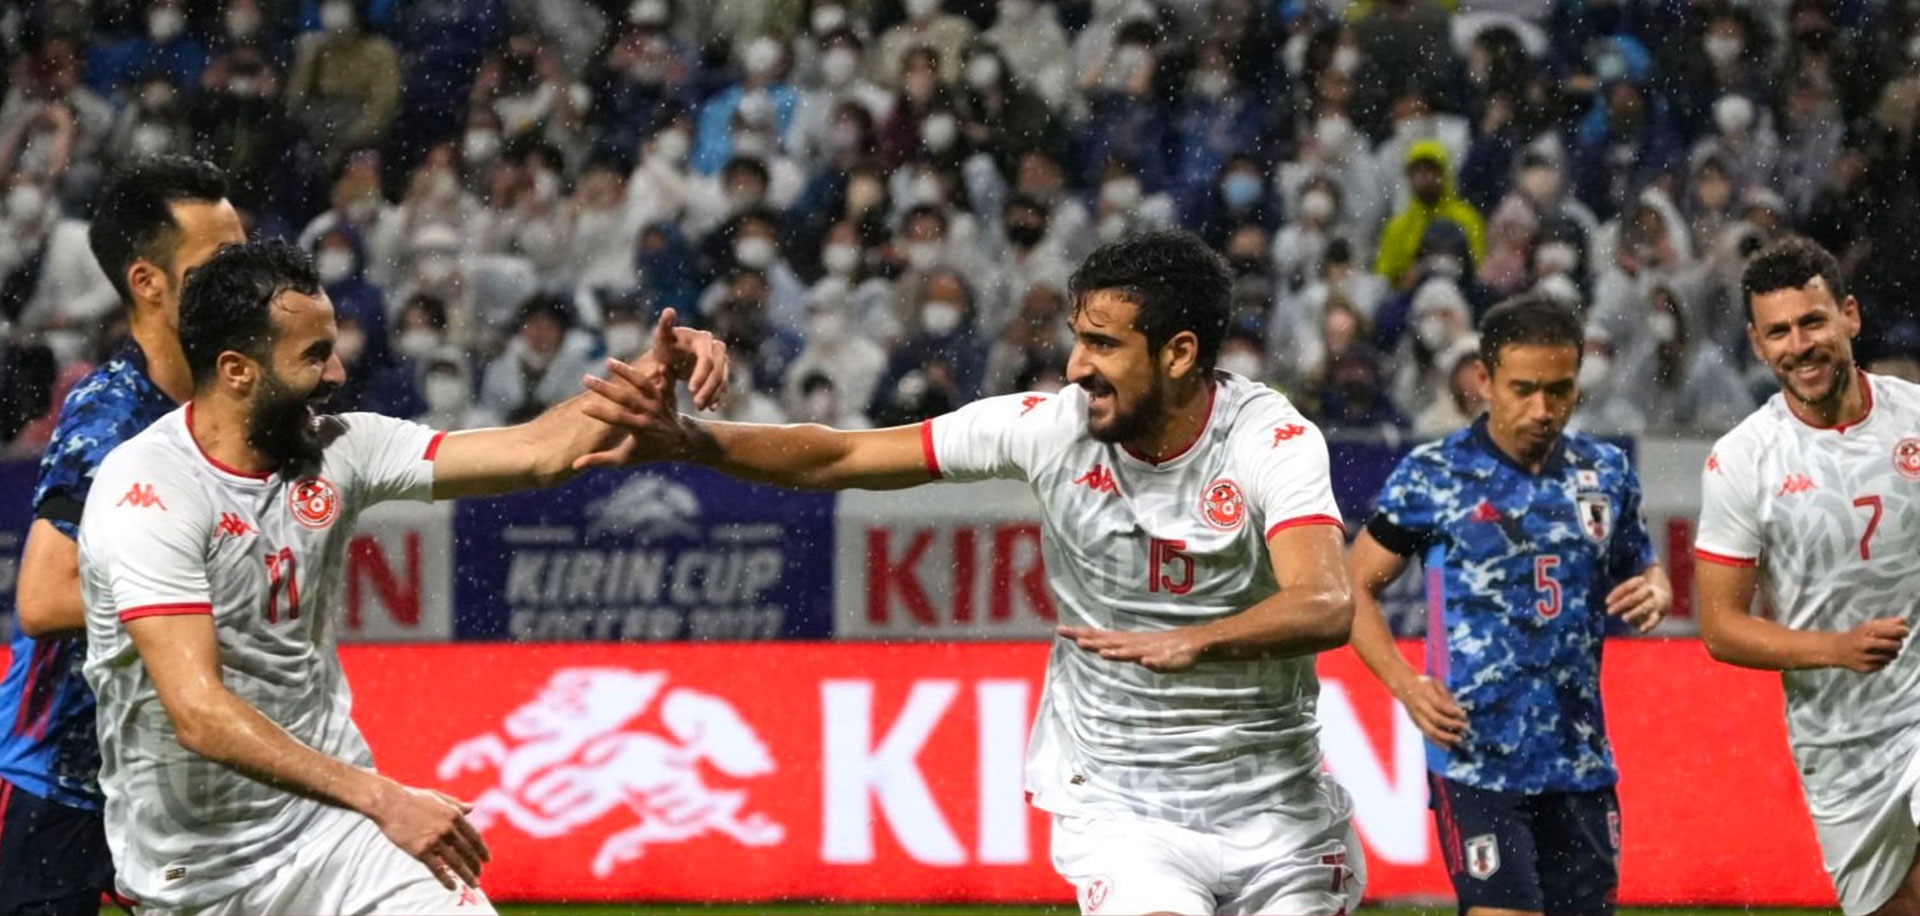 تونس تفوز بكأس كيرين الودية بعد اكتساح اليابان 